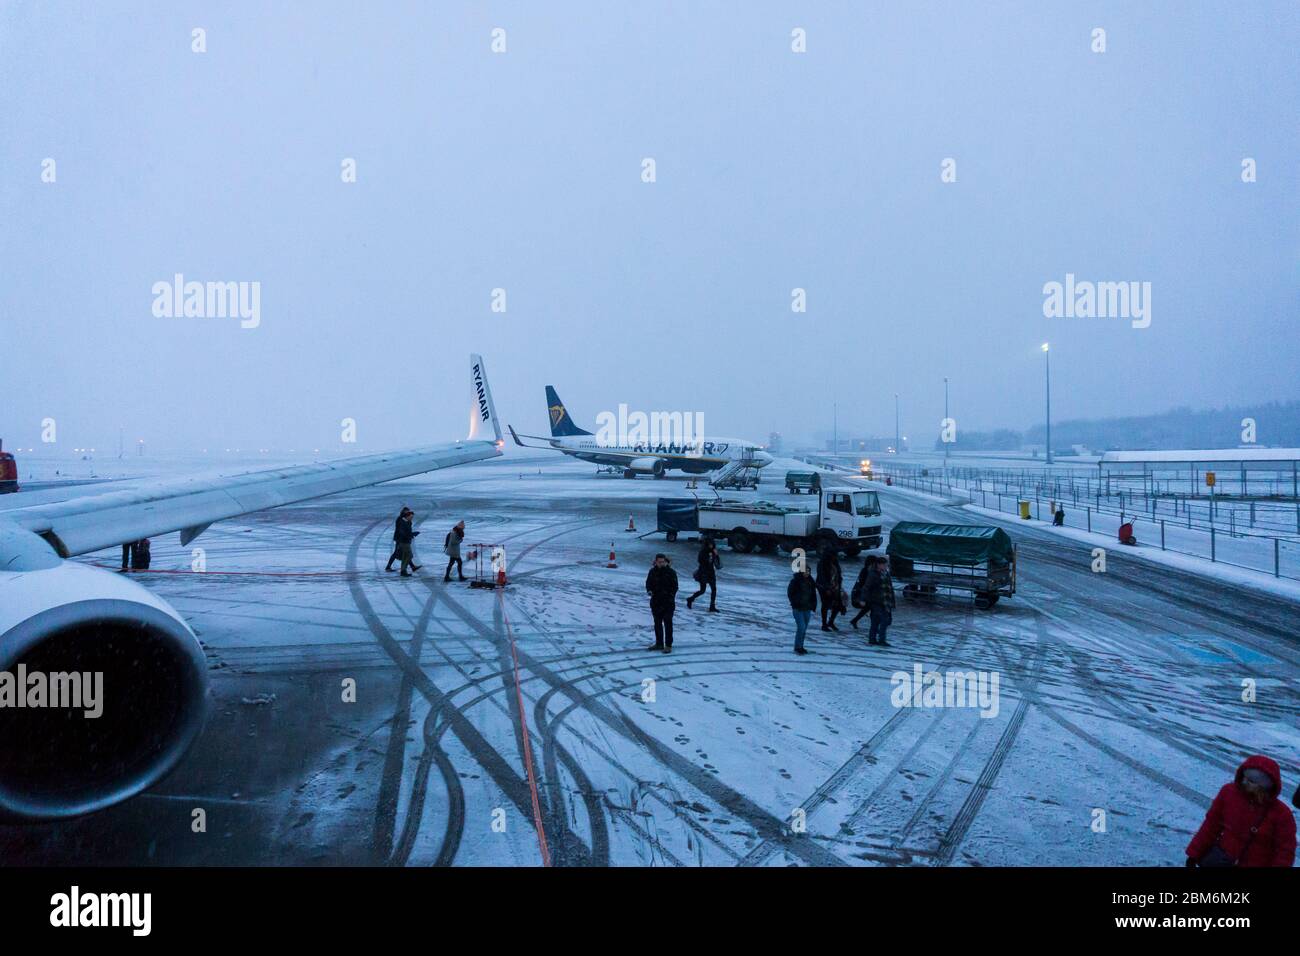 Ryan Air am Flughafen Warschau Modlin im Winter im Schnee und Eis. Stockfoto